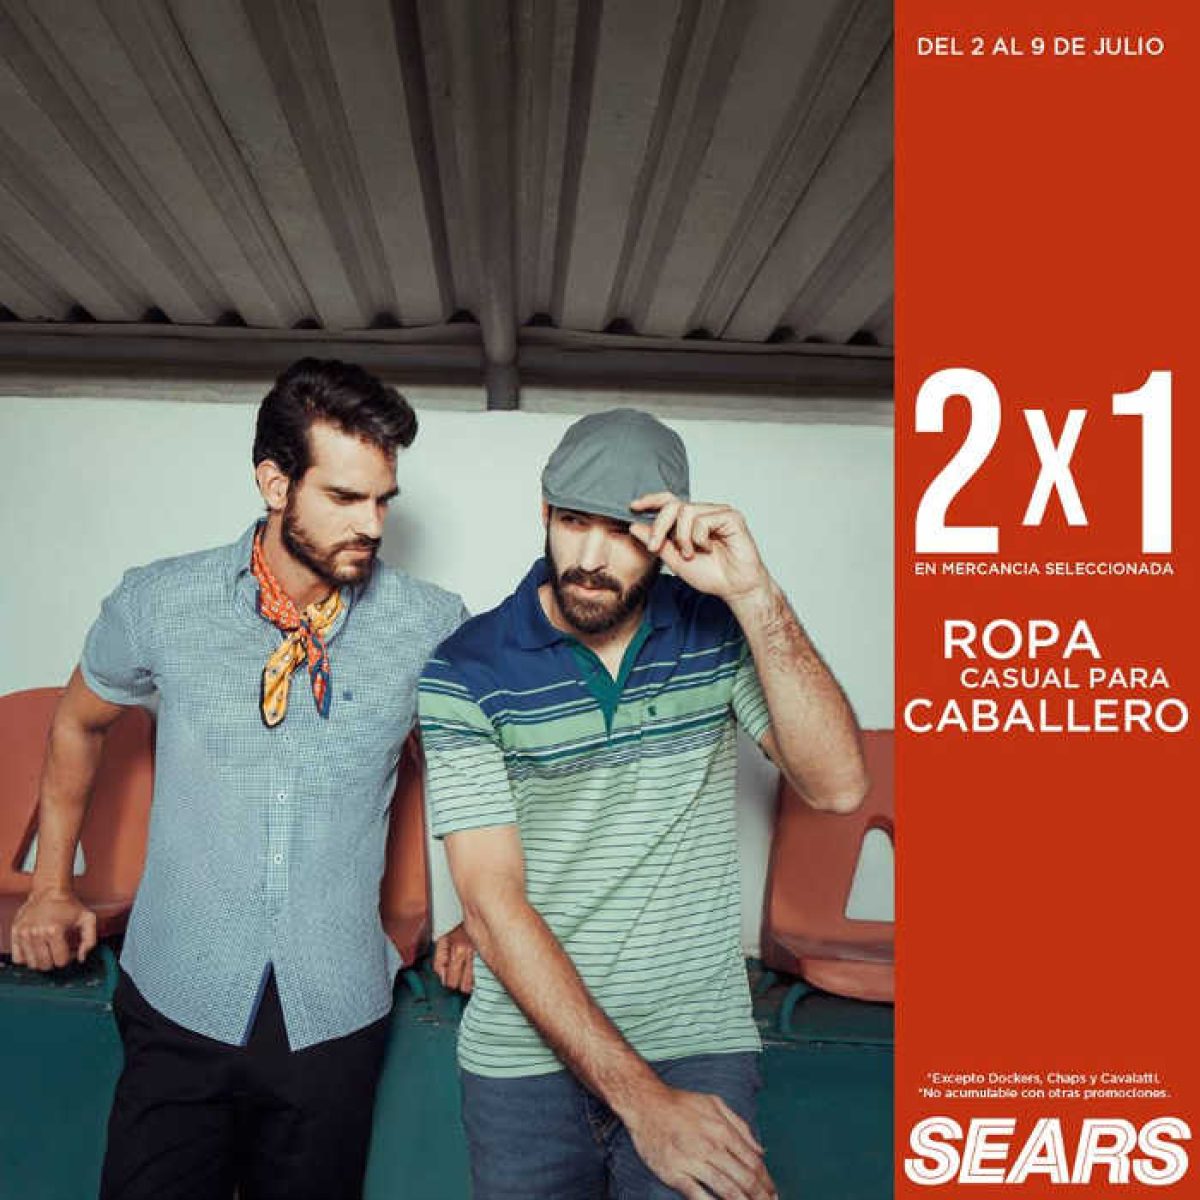 Sears: 2x1 en ropa casual para caballero al 9 julio 2018